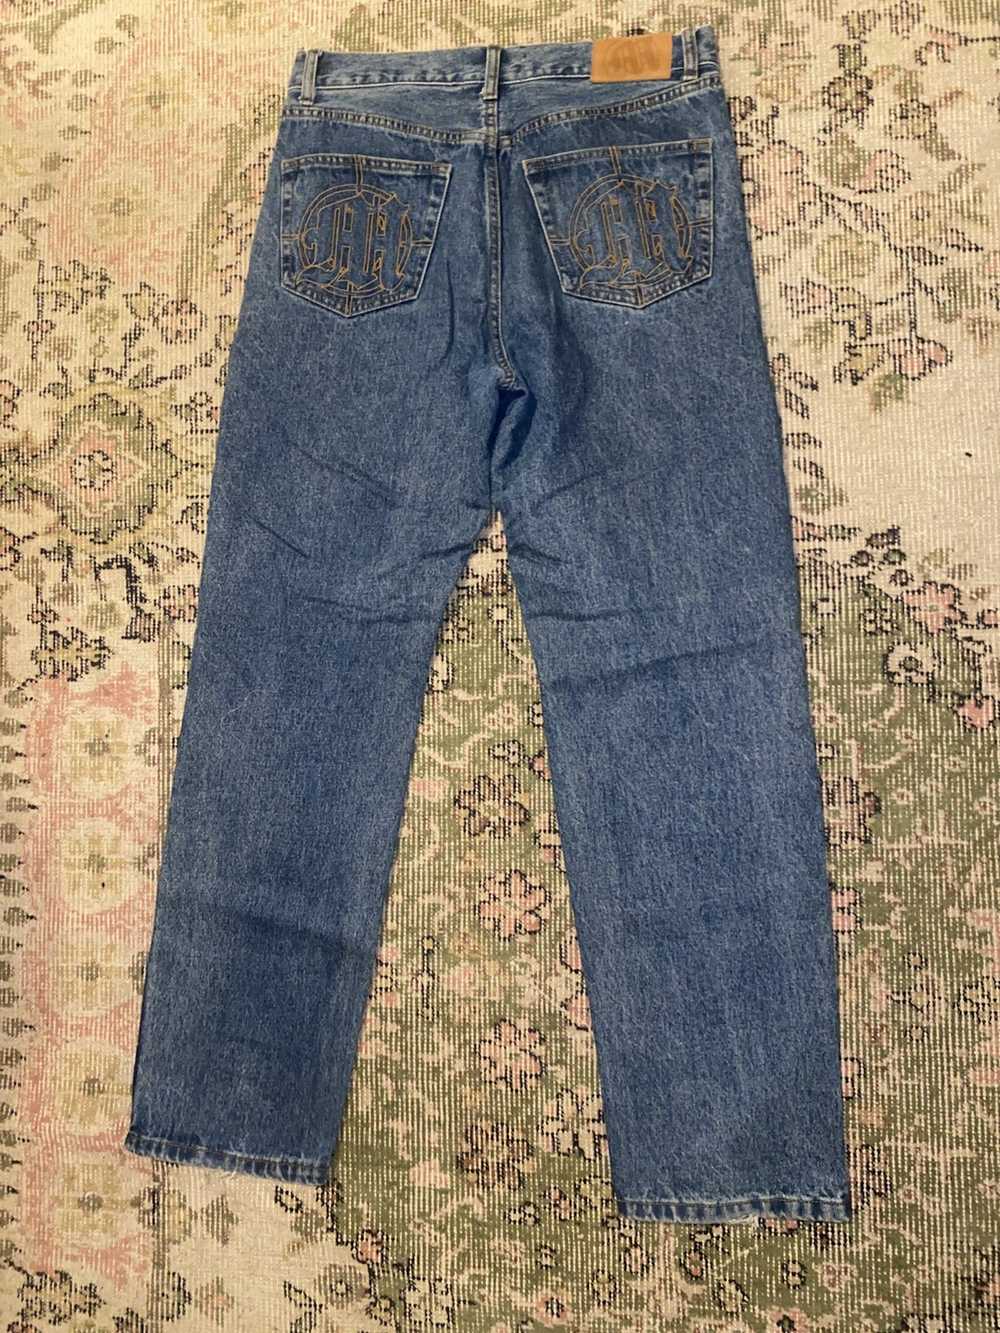 Menace Menace straight leg jeans - image 4